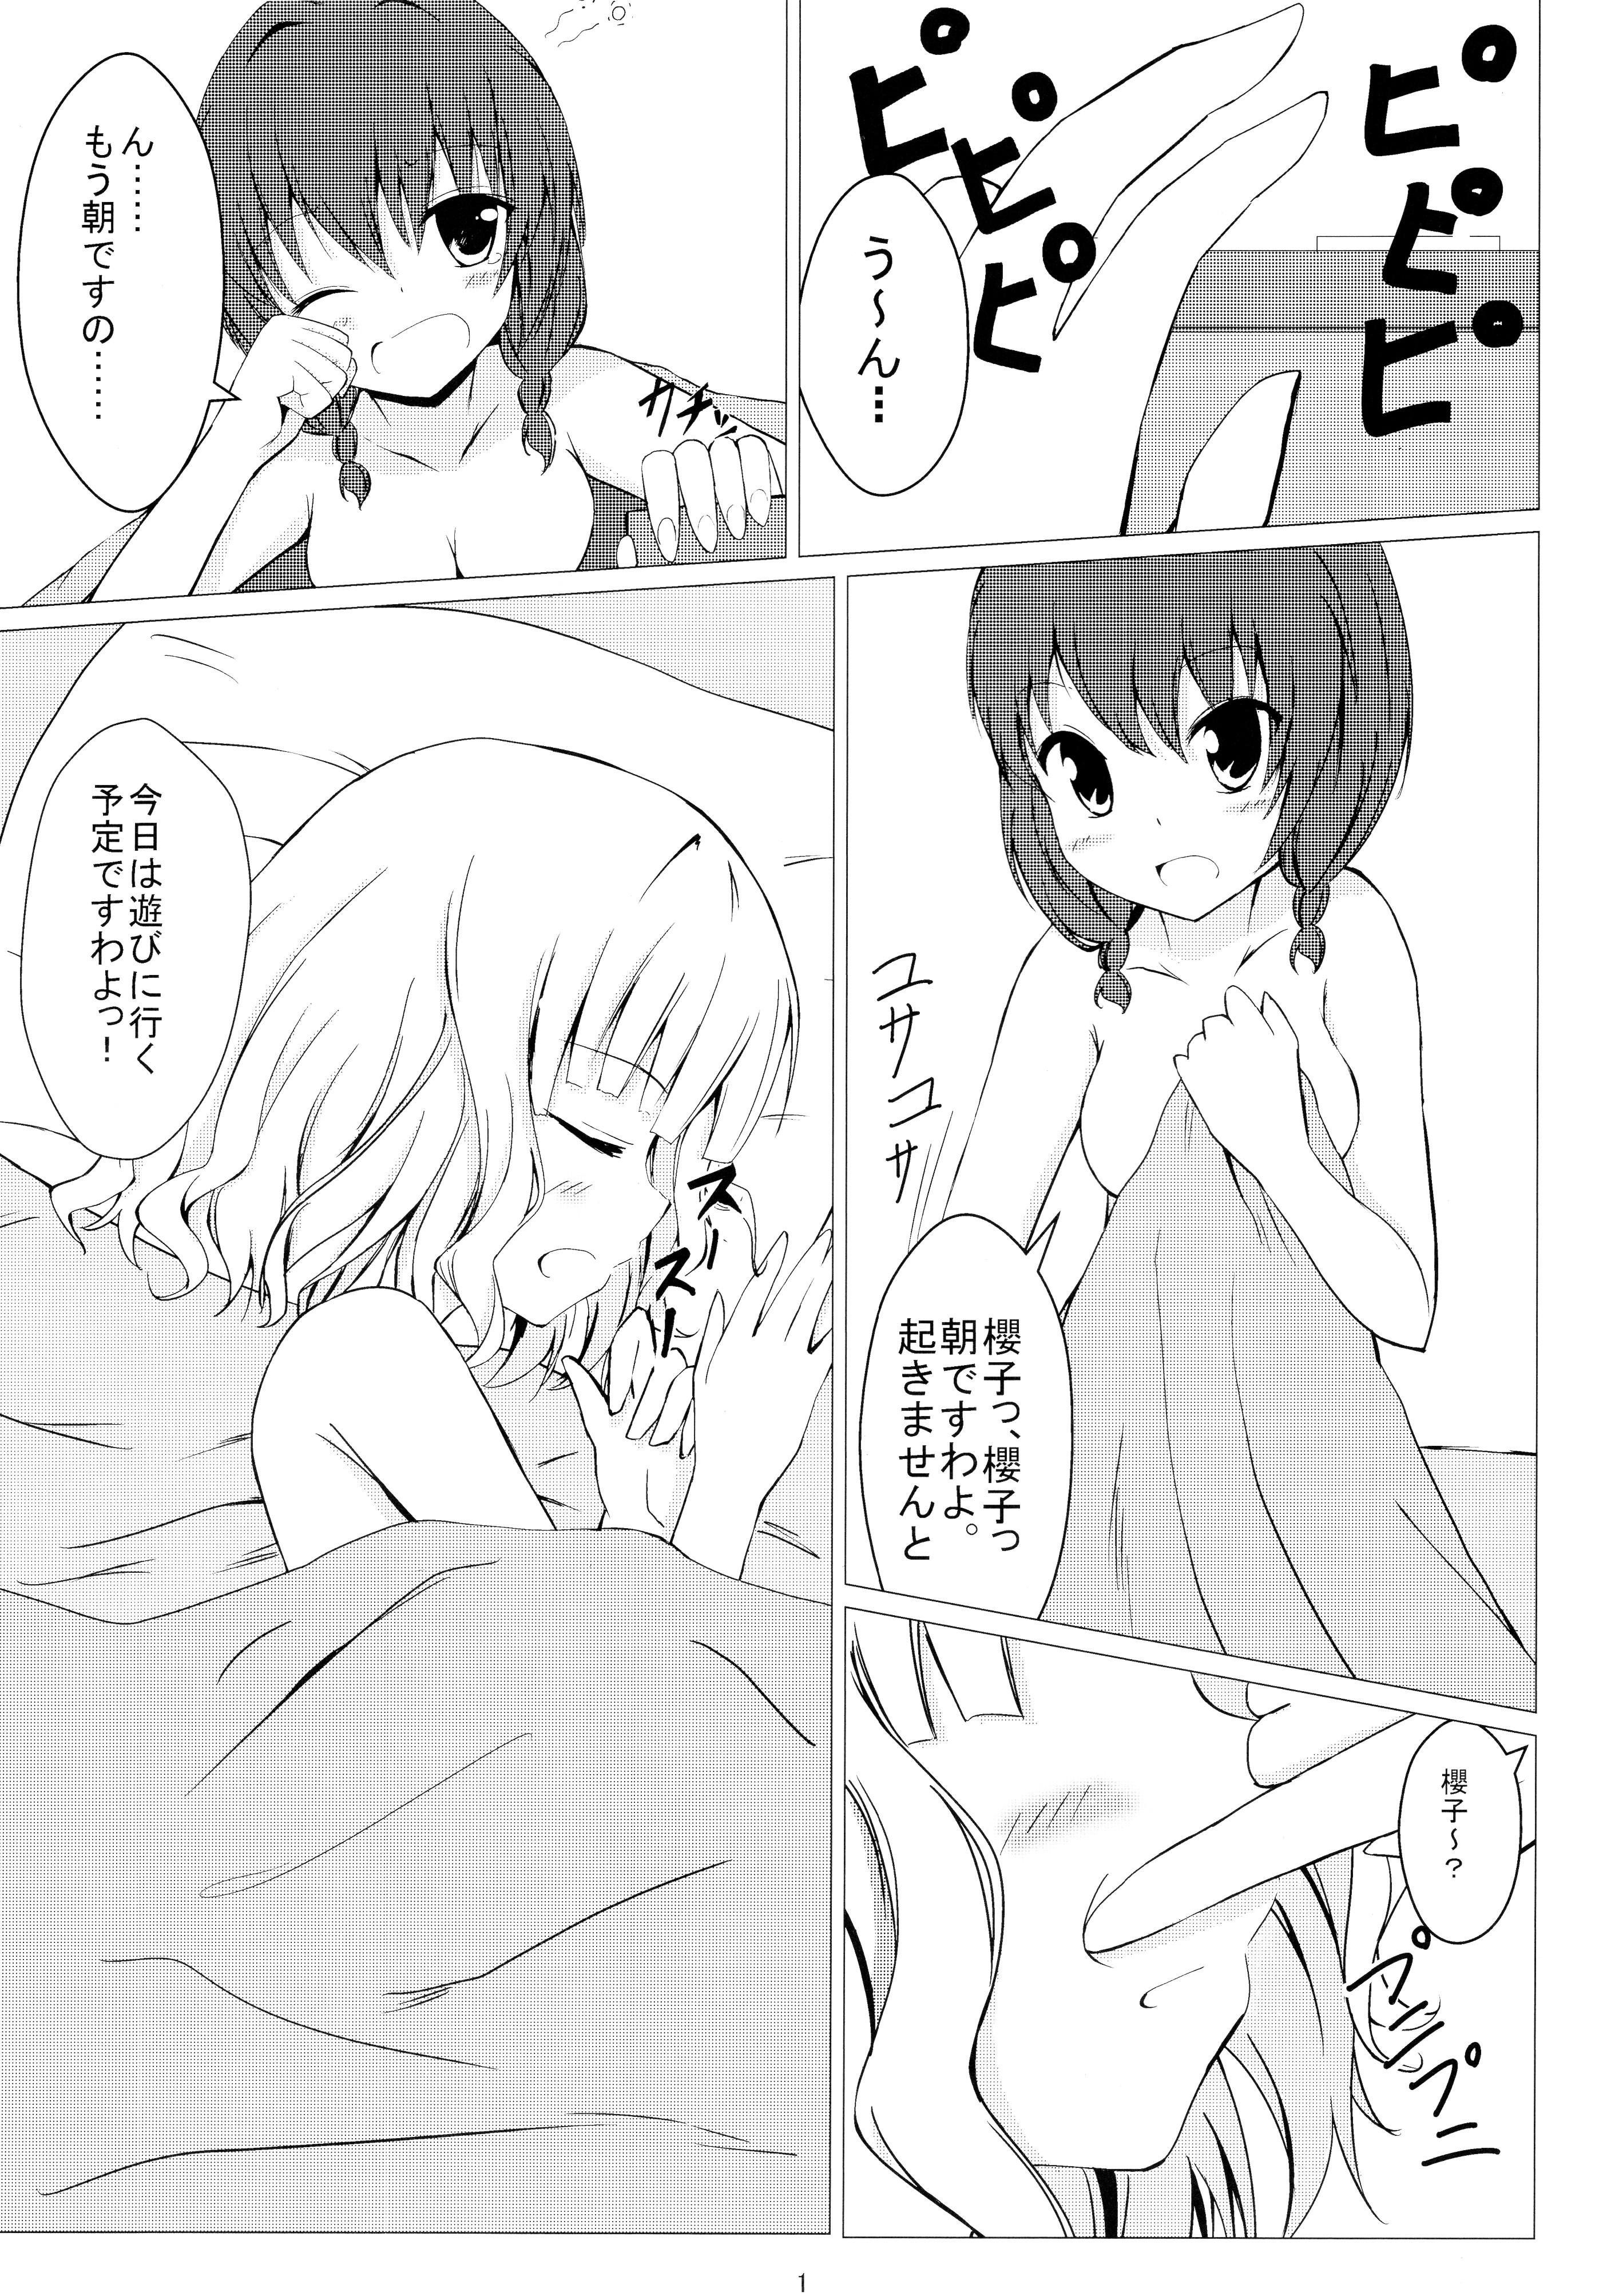 Celebrity Sex Scene Himasaku Ecchi 2 - Yuruyuri Porno Amateur - Page 3